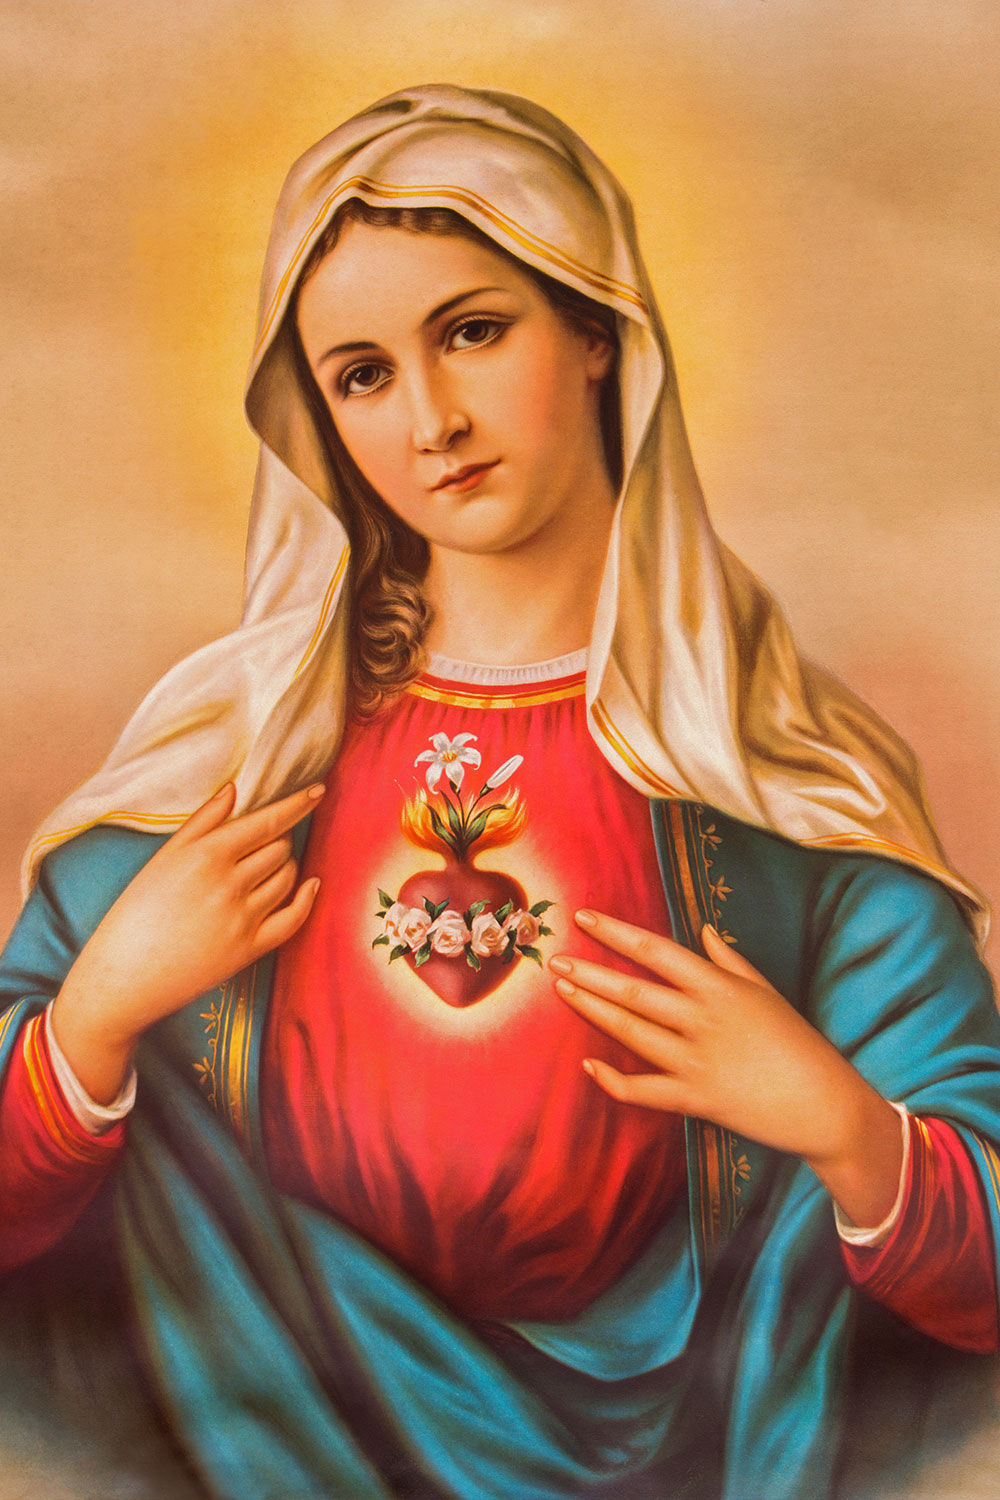 Hình Ảnh Đức Mẹ Maria: Hãy để những hình ảnh Đức Mẹ Maria làm cho trái tim bạn được an bình và tràn đầy yêu thương. Tại đây, bạn sẽ tìm thấy những bức hình đầy cảm xúc và ý nghĩa, gợi lên sự tôn trọng và sự kính trọng đối với mẹ Thiên Chúa.